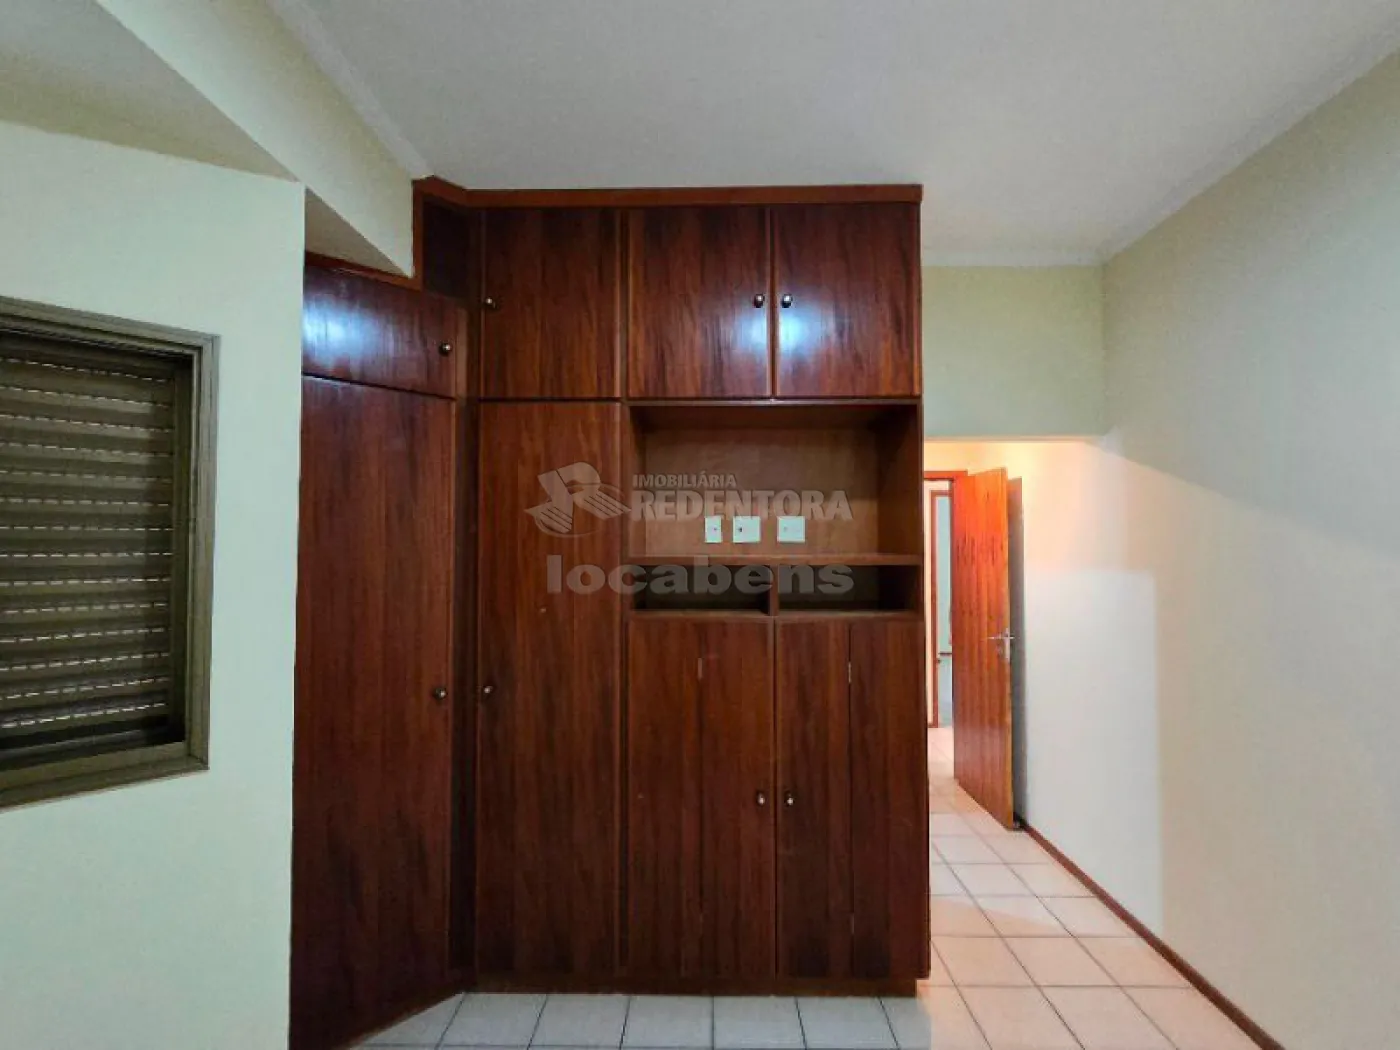 Comprar Apartamento / Padrão em São José do Rio Preto apenas R$ 400.000,00 - Foto 10